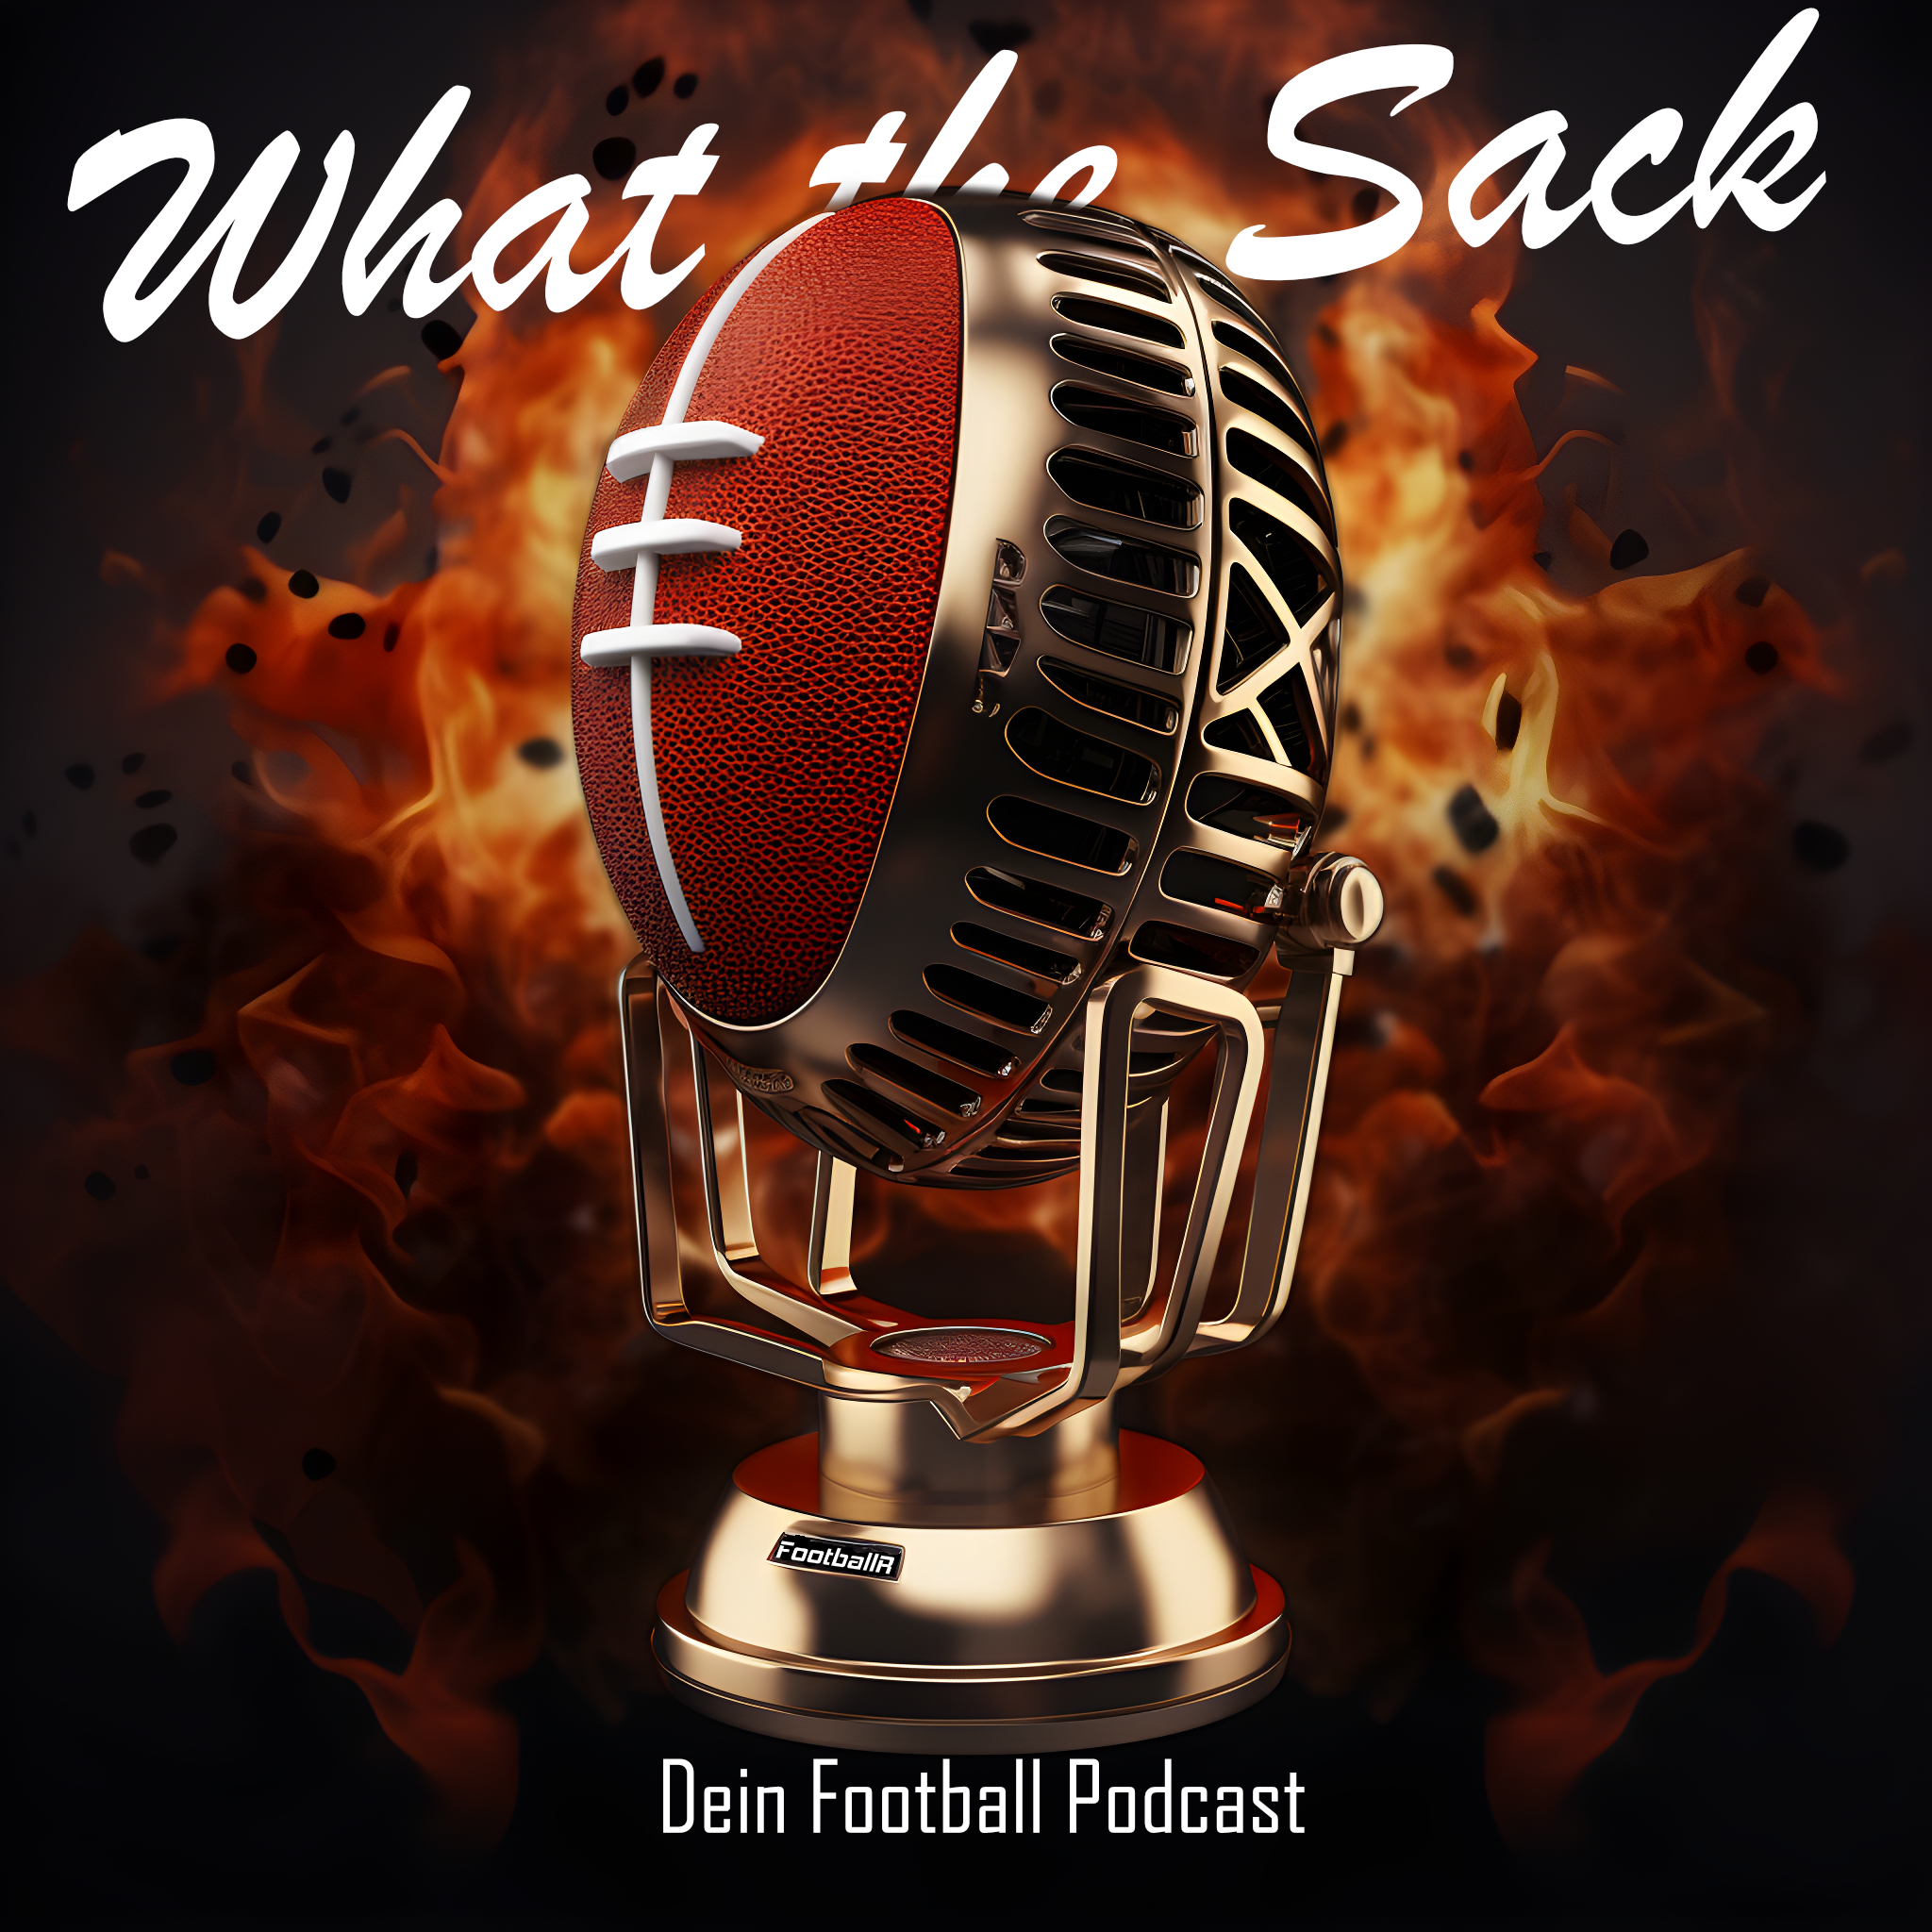 FootballR - NFL - Super Bowl und Las Vegas - Diese Beschreibung wurde automatisch generiert. Erleben Sie den spannenden Sack-Dean-Football-Podcast in Las Vegas, pünktlich zur Super Bowl-Saison!